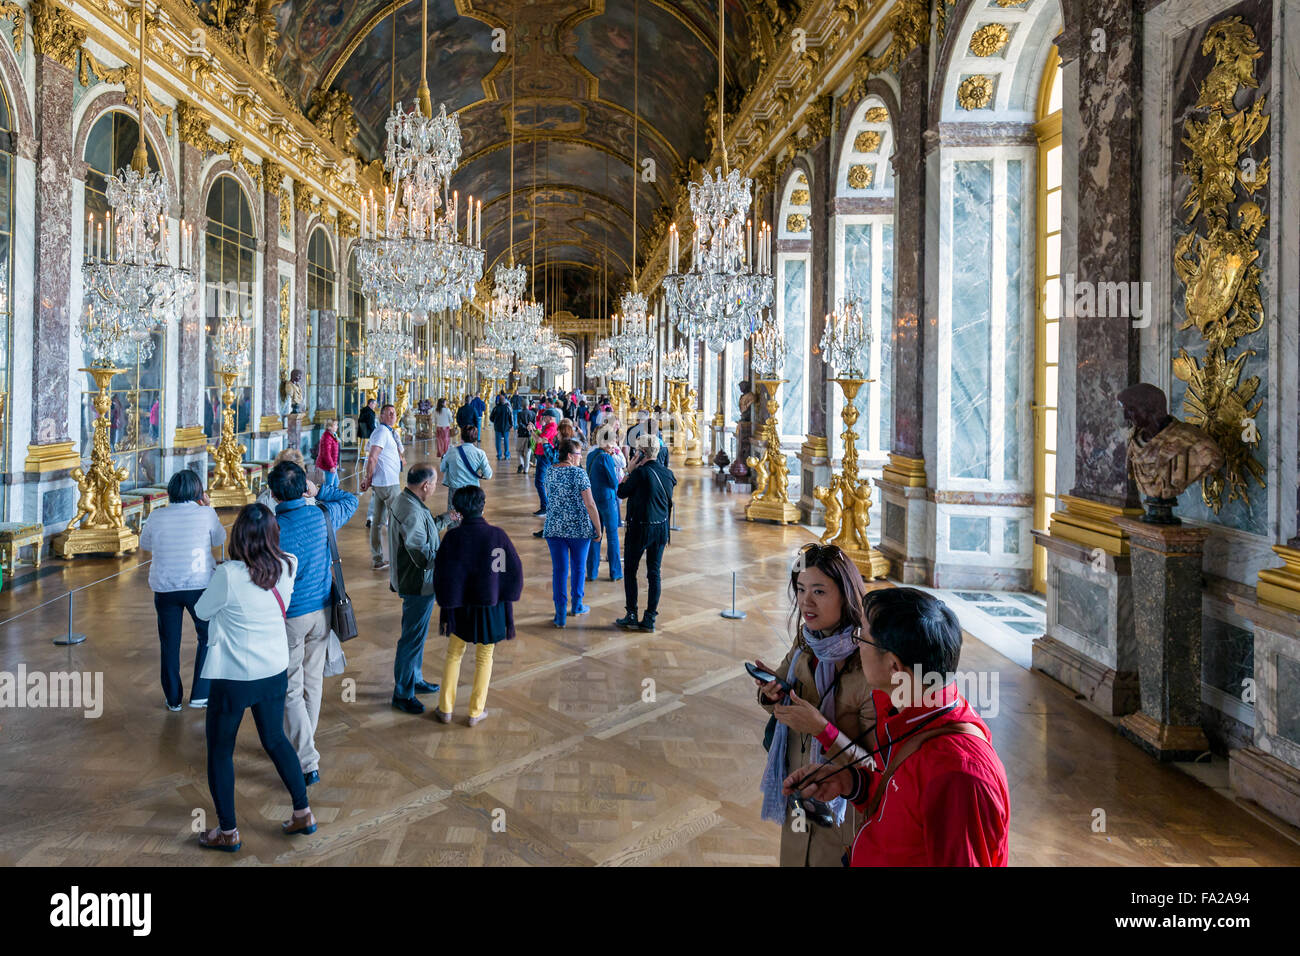 VERSAILLES Parigi, Francia - 30 Maggio: ai visitatori di ammirare la Sala degli Specchi il 30 maggio 2015 presso il Palazzo di Versailles nei pressi di Parigi, Foto Stock